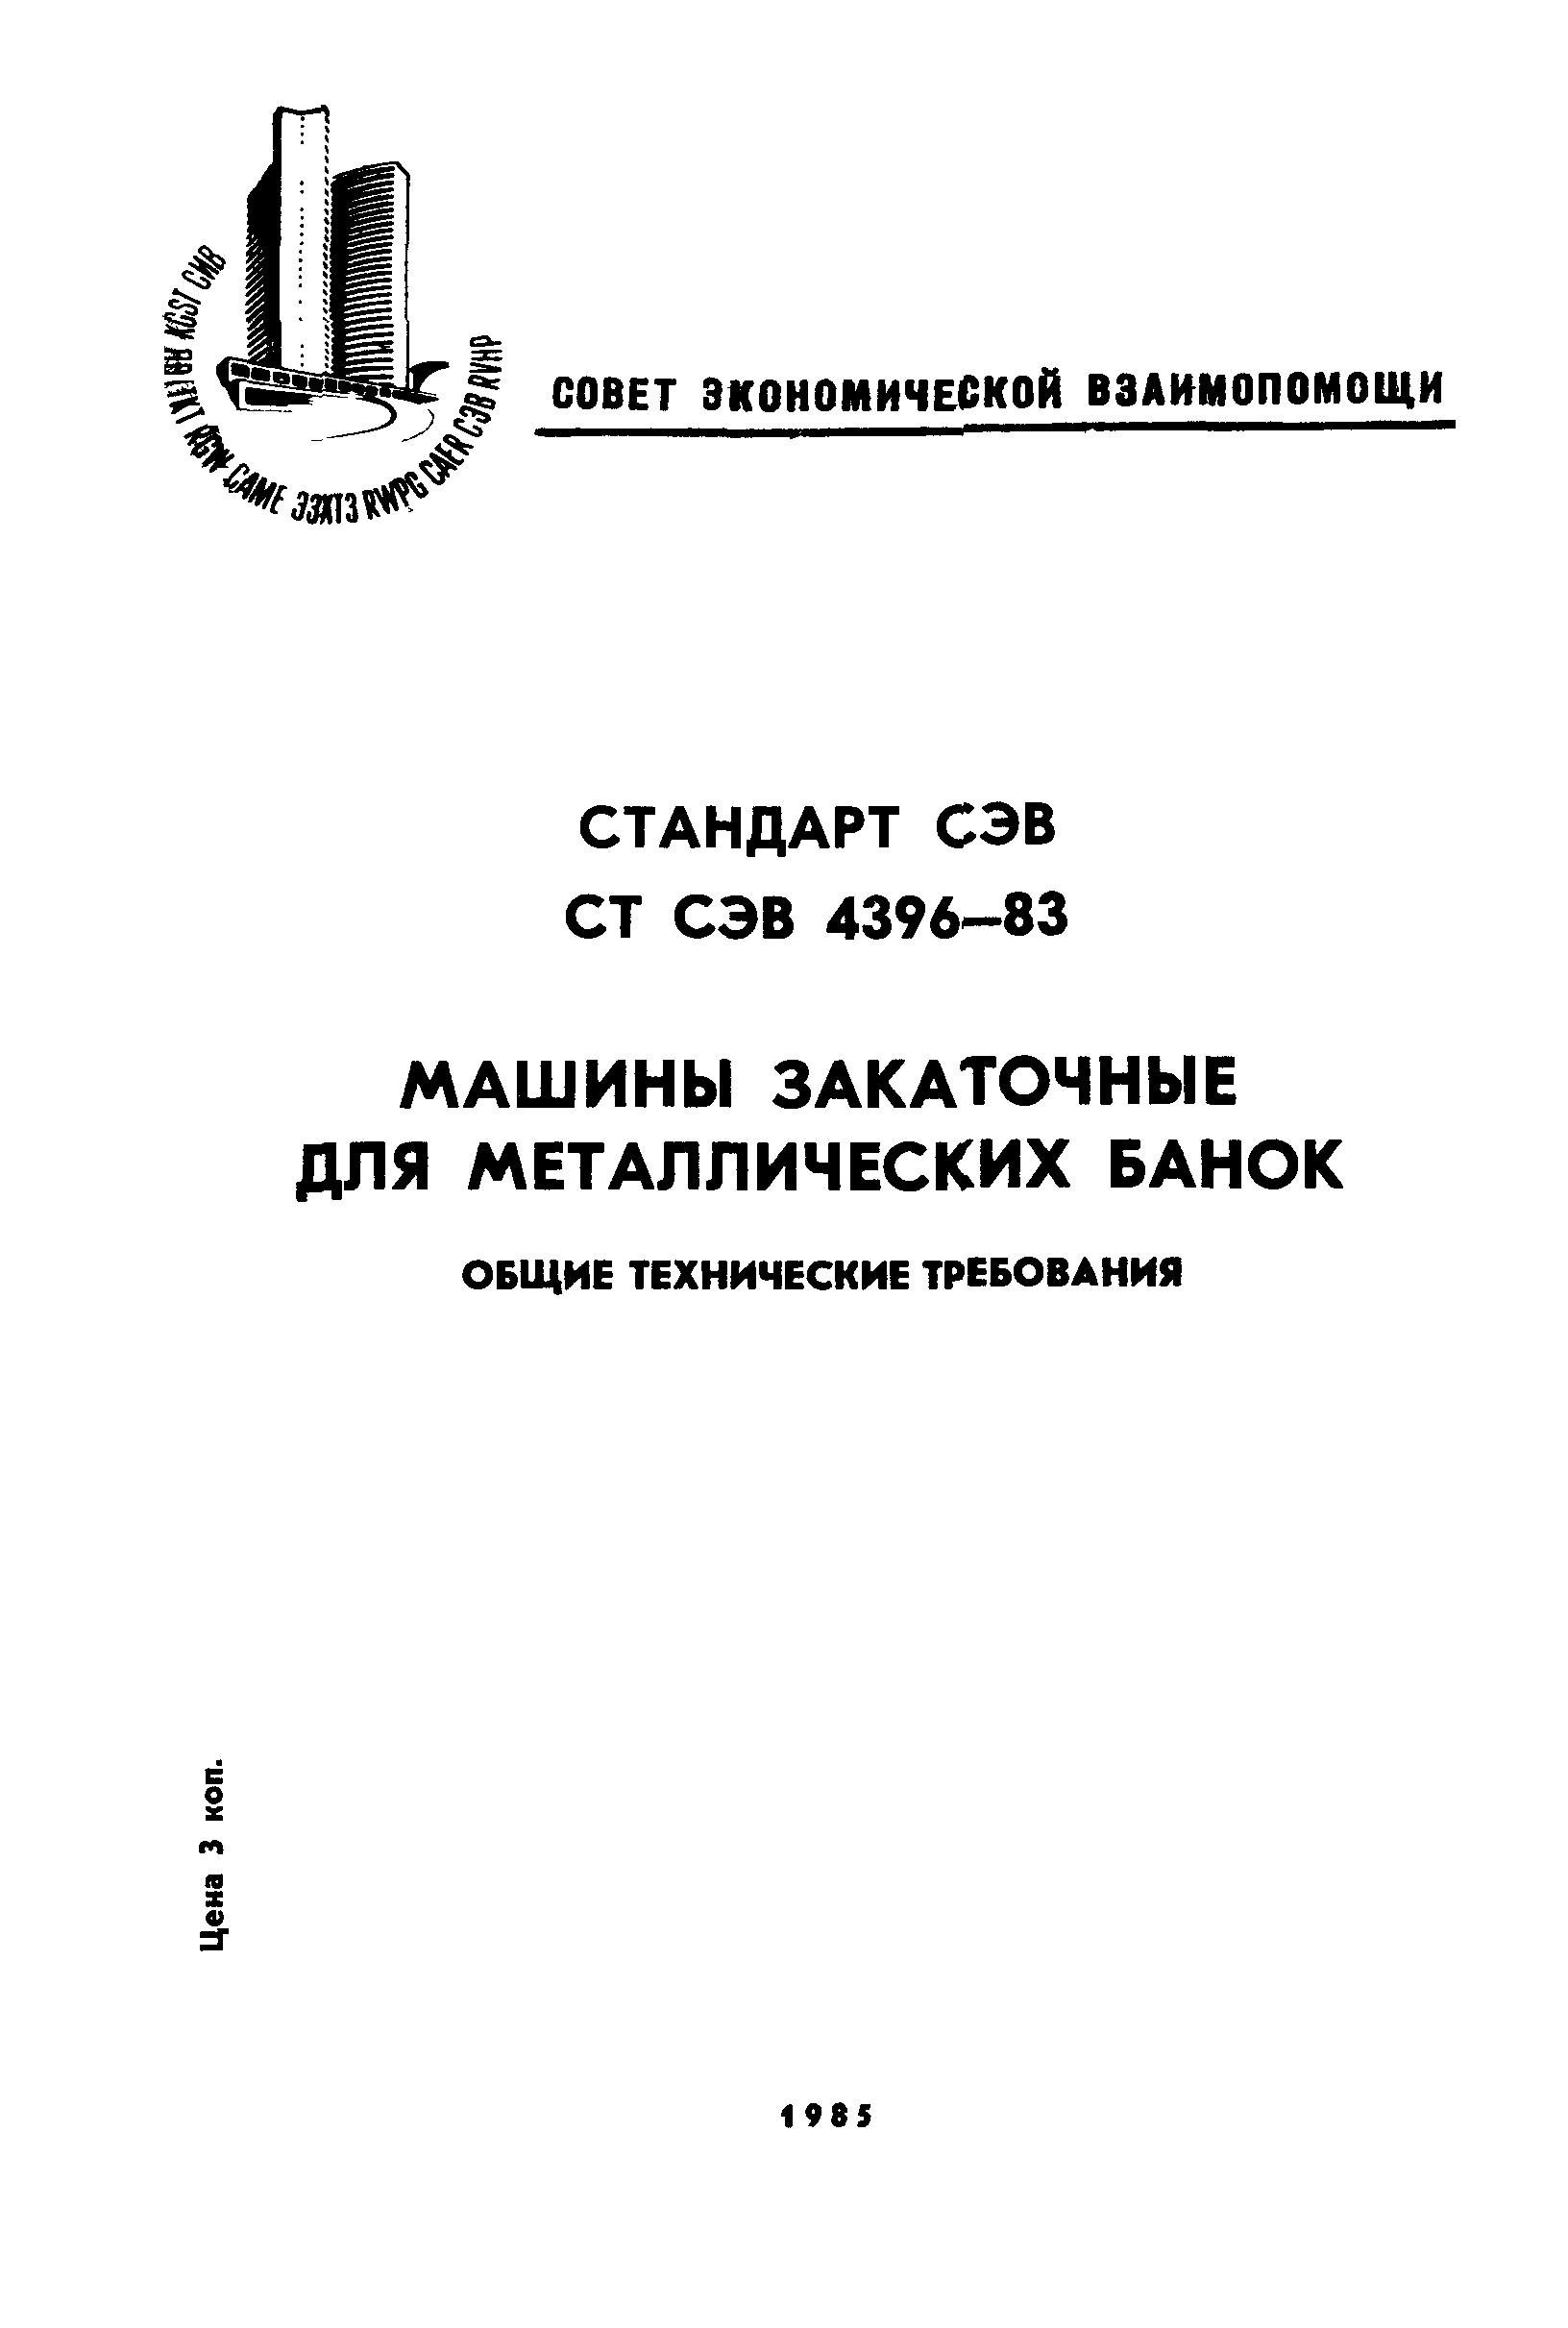 СТ СЭВ 4396-83